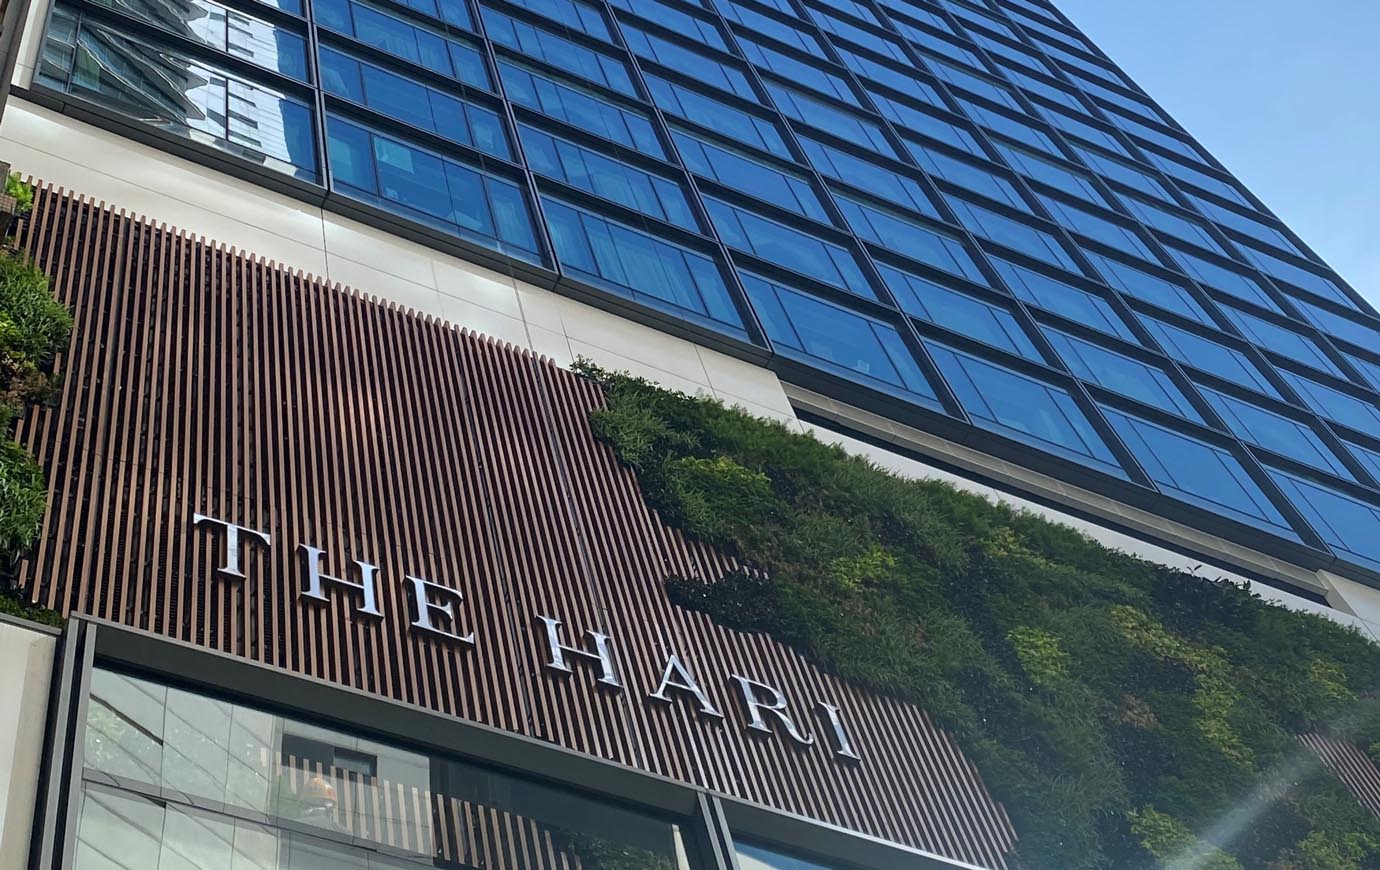 The Hari Hong Kong